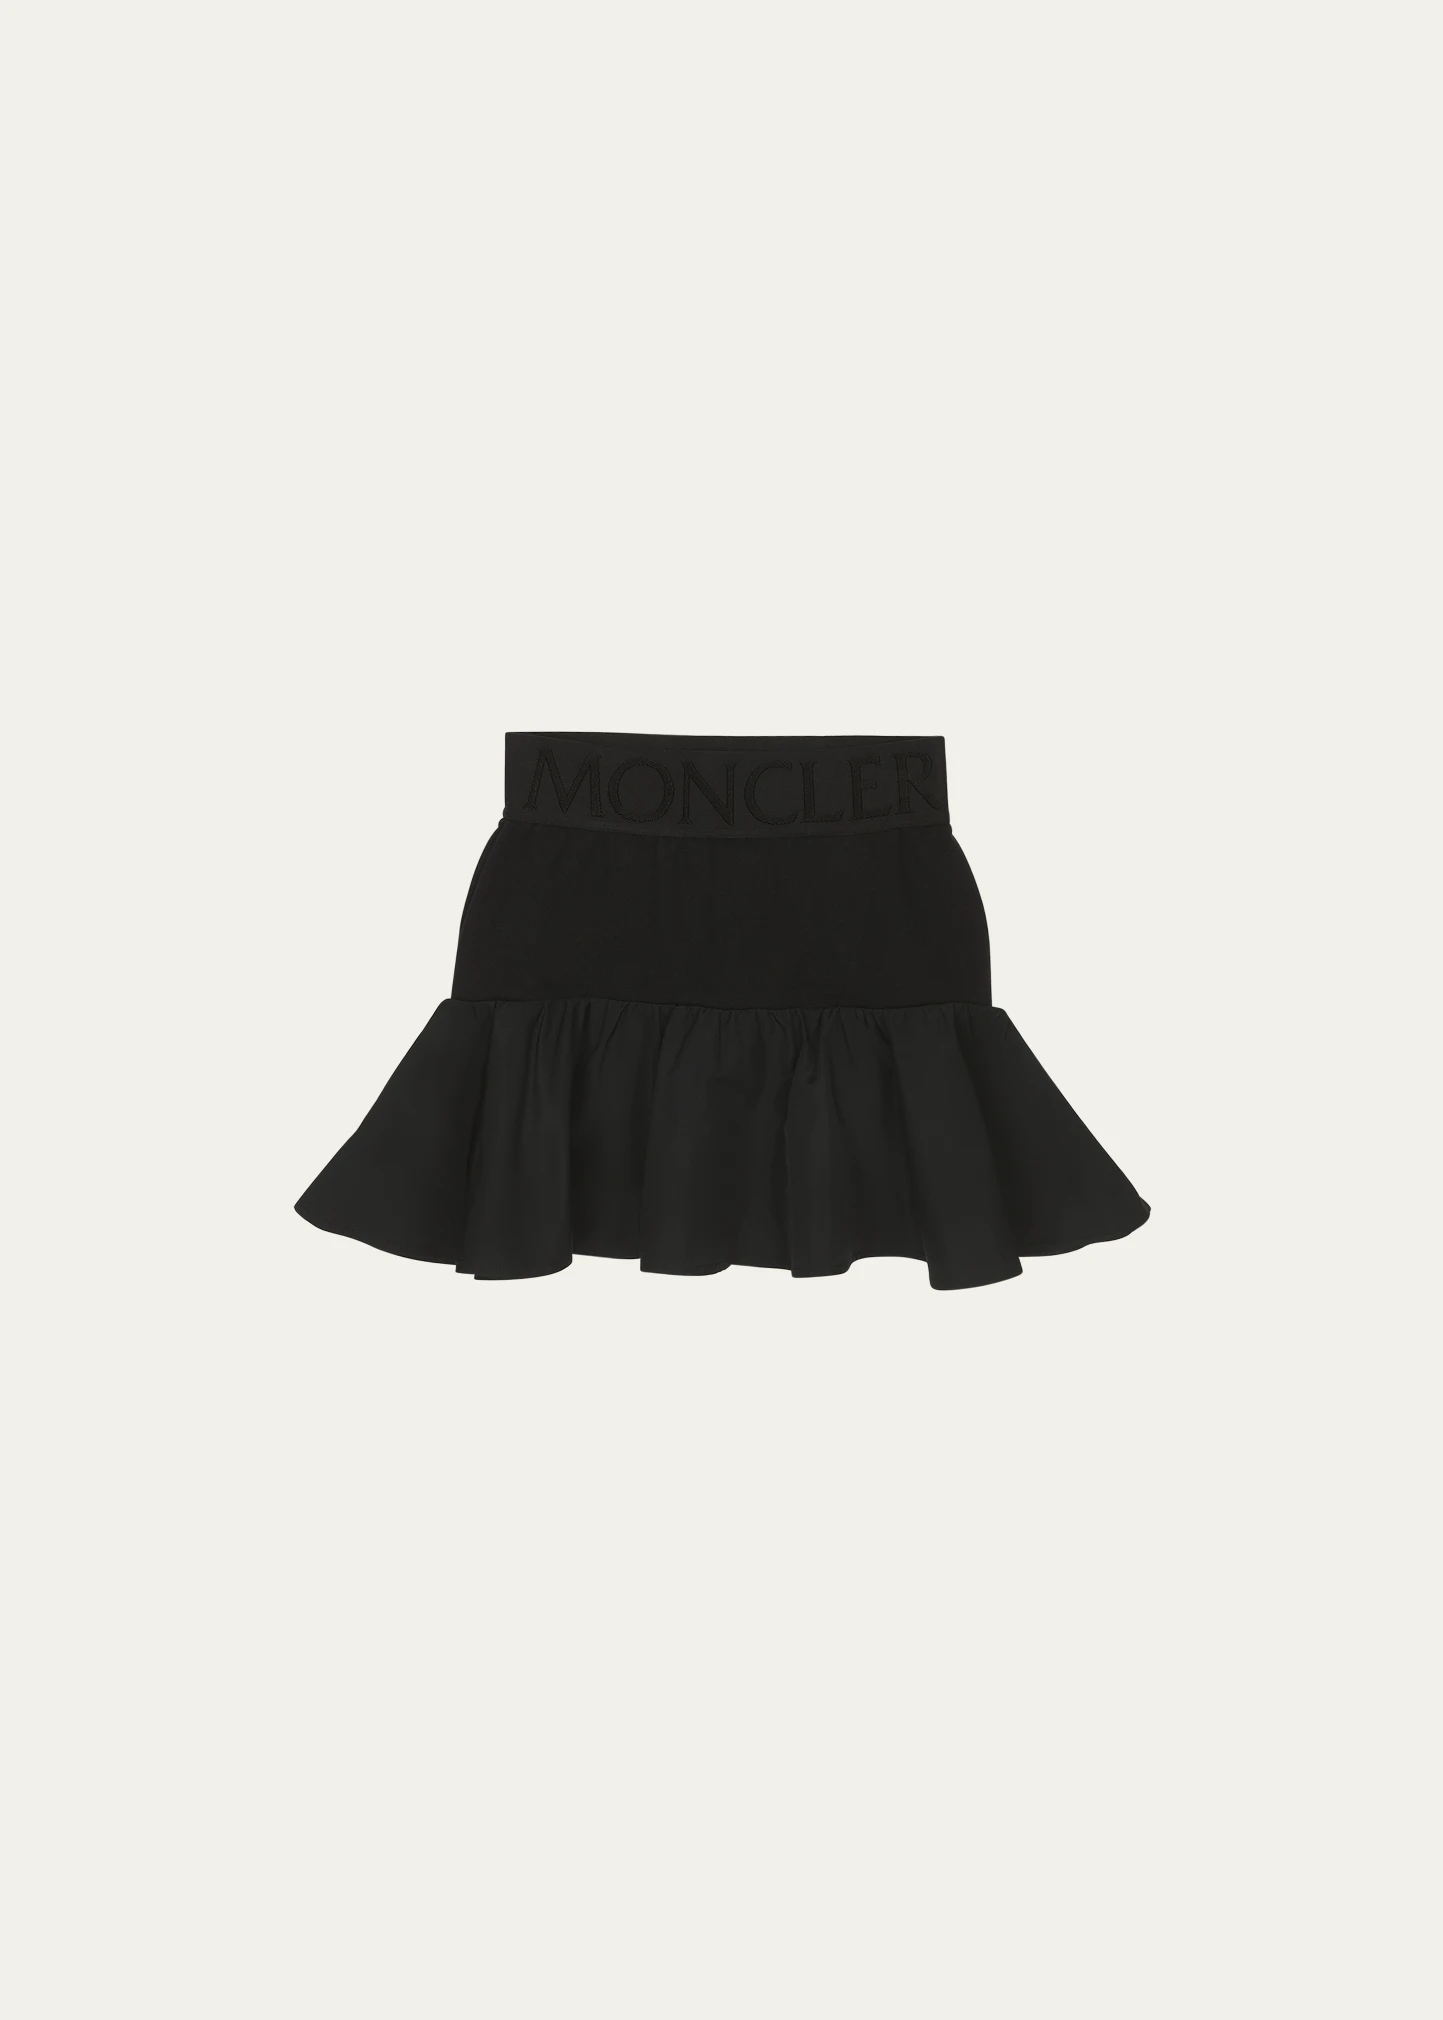 Moncler skirt black J19548H00013_m